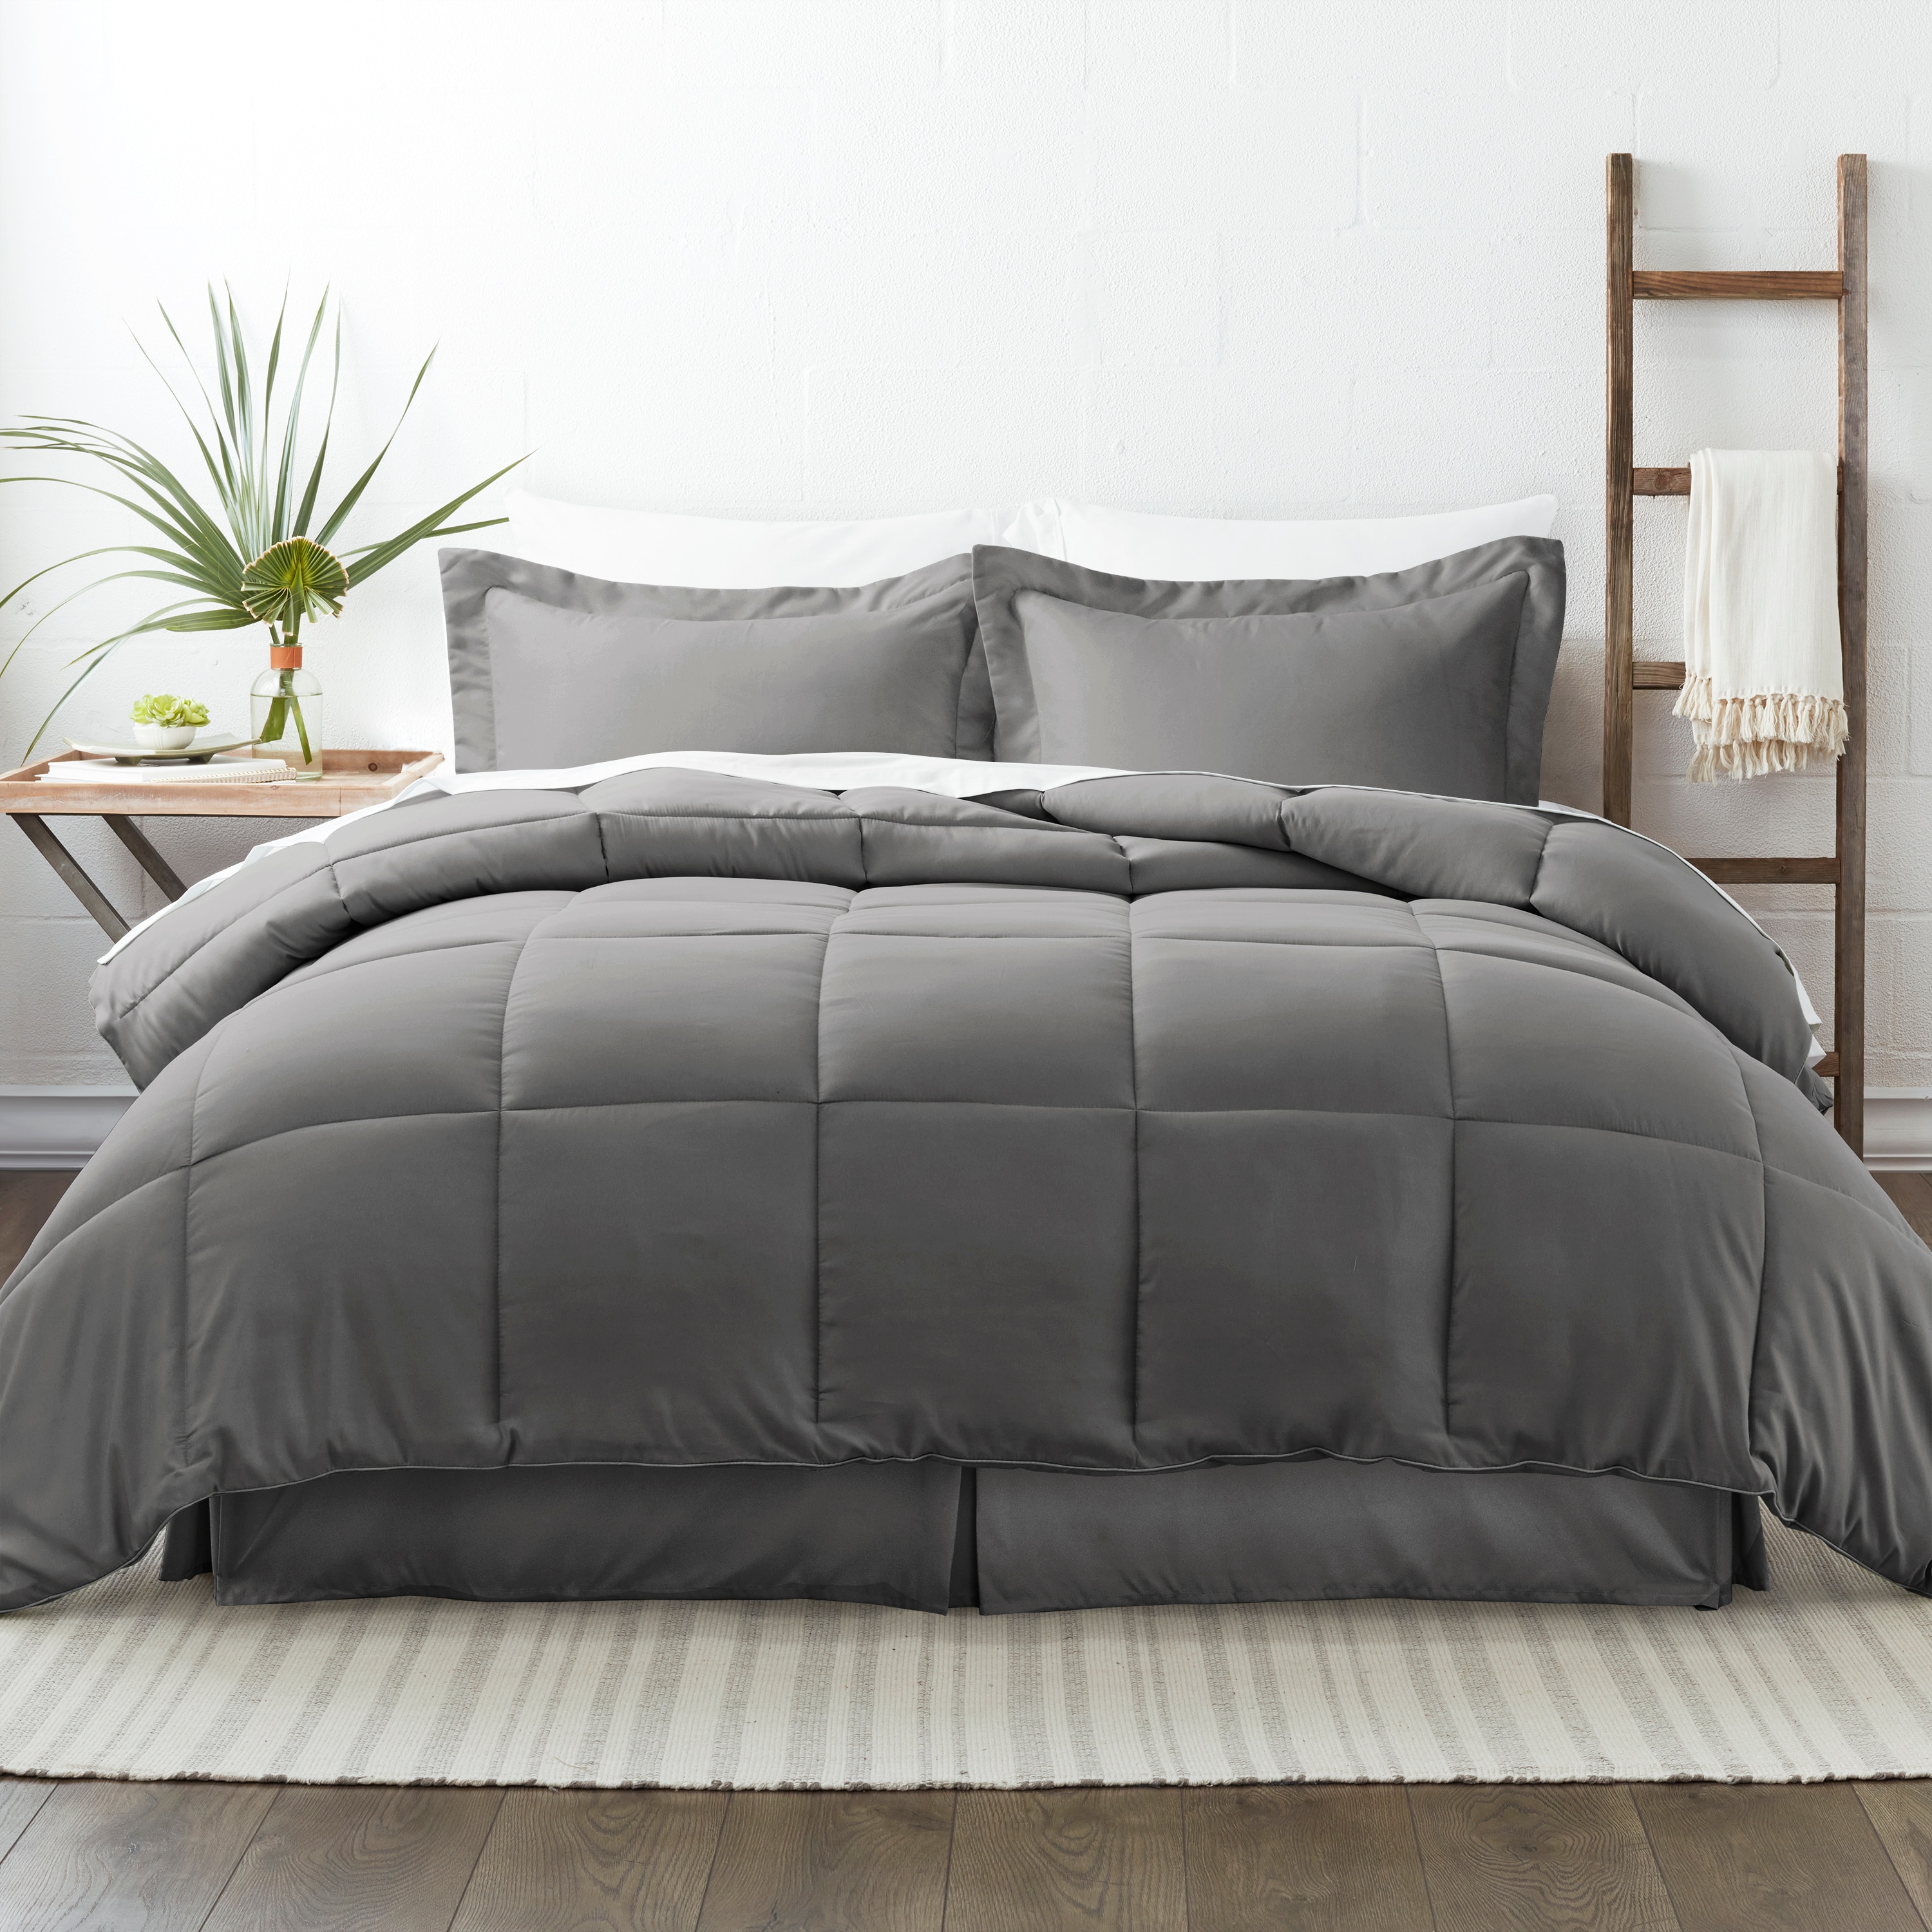 Set Soft Bed In Bag Home Bedroom Bedding Comfort Set 8 Pieces Full Size Black 